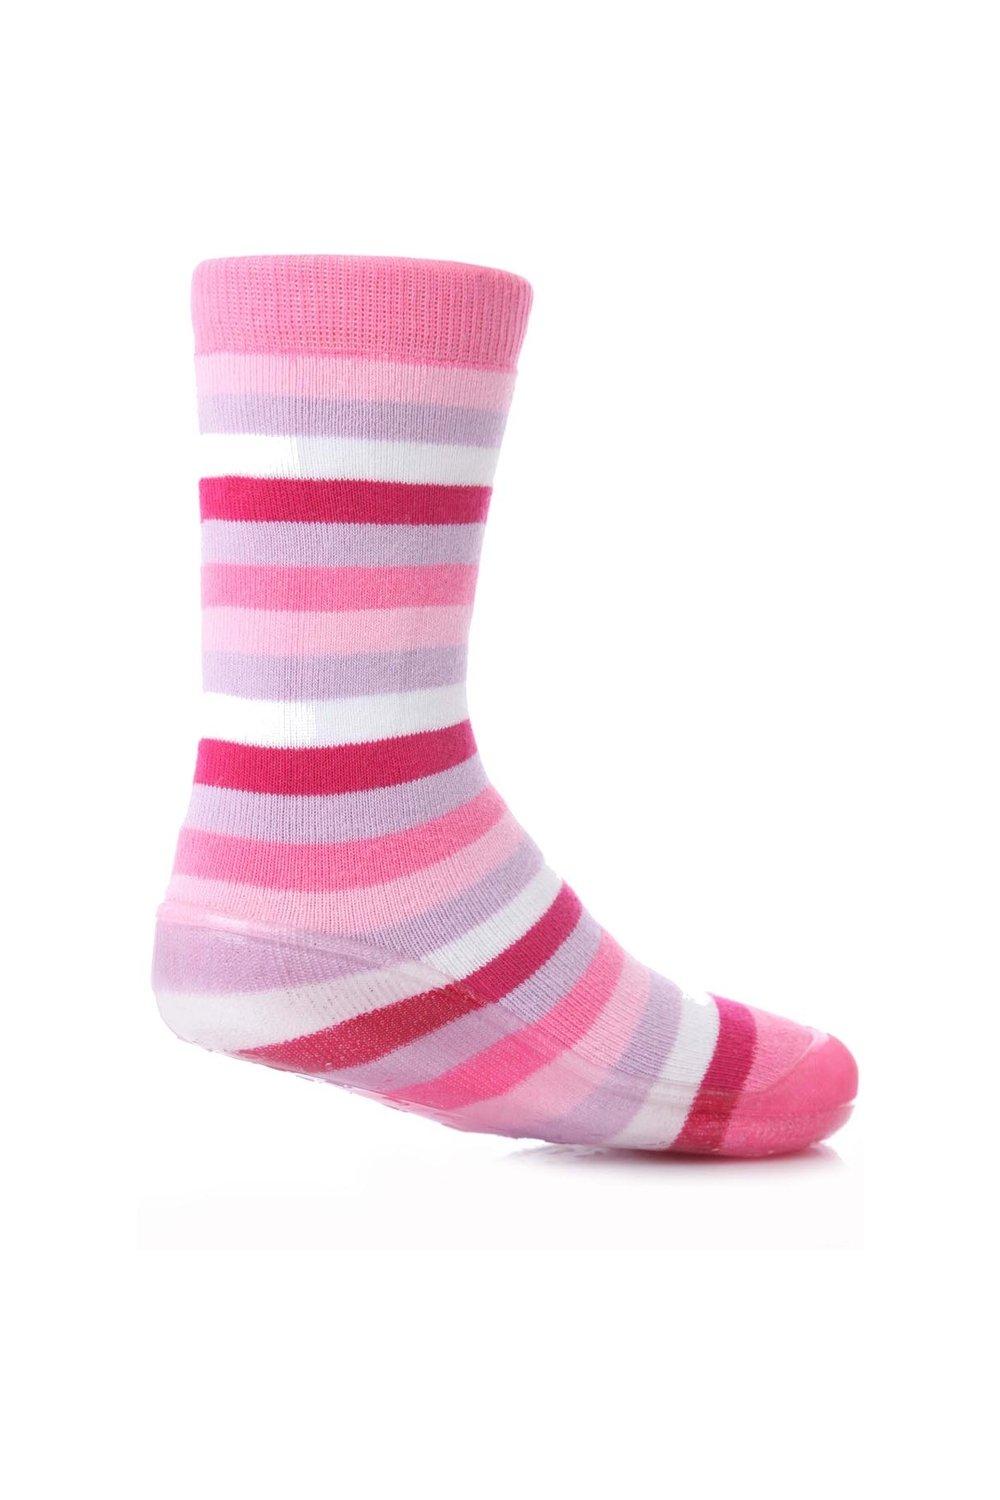 цена 1 пара полосатых носков-тапочек Gripper со скидкой 25% на этот стиль SOCKSHOP, розовый